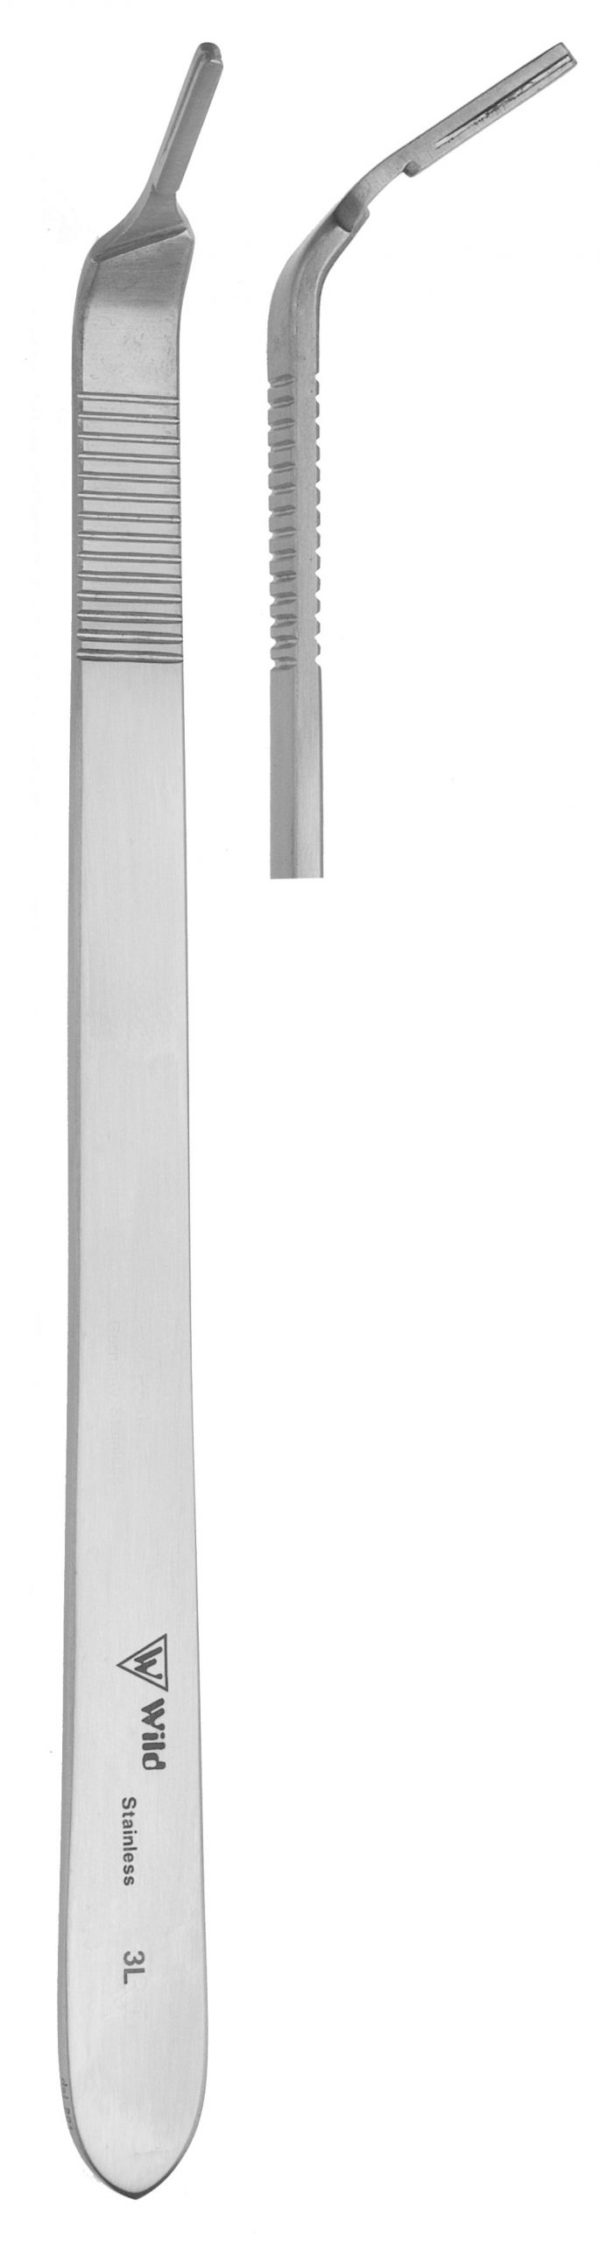 Klingenhalter Figur 3 abgewinkelt mit extra langem Flachgriff 08.240.35zum Preis von 18.26 zzgl. Versand Hersteller : Heiko Wild